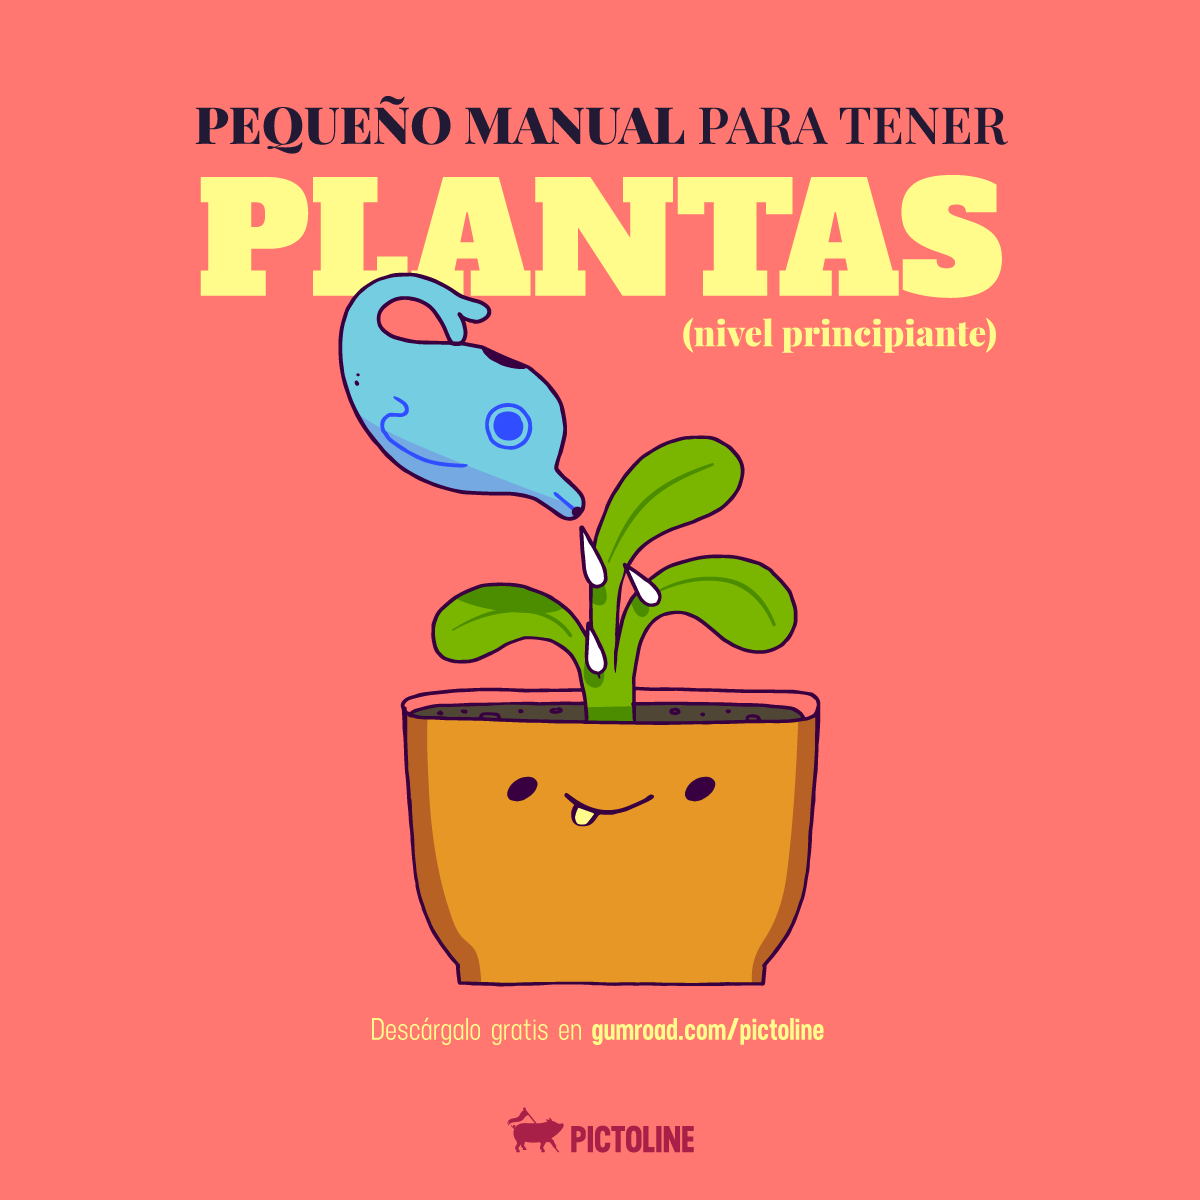 ¿Cuáles plantas comprar? ¿Cómo cuidarlas? ¿Cómo no matarlas? 😅 🍃☘️🌼Pequeño manual para tener plantas 🌺🌿🌵 Descárgalo gratis aquí: gumroad.com/l/yEfwK